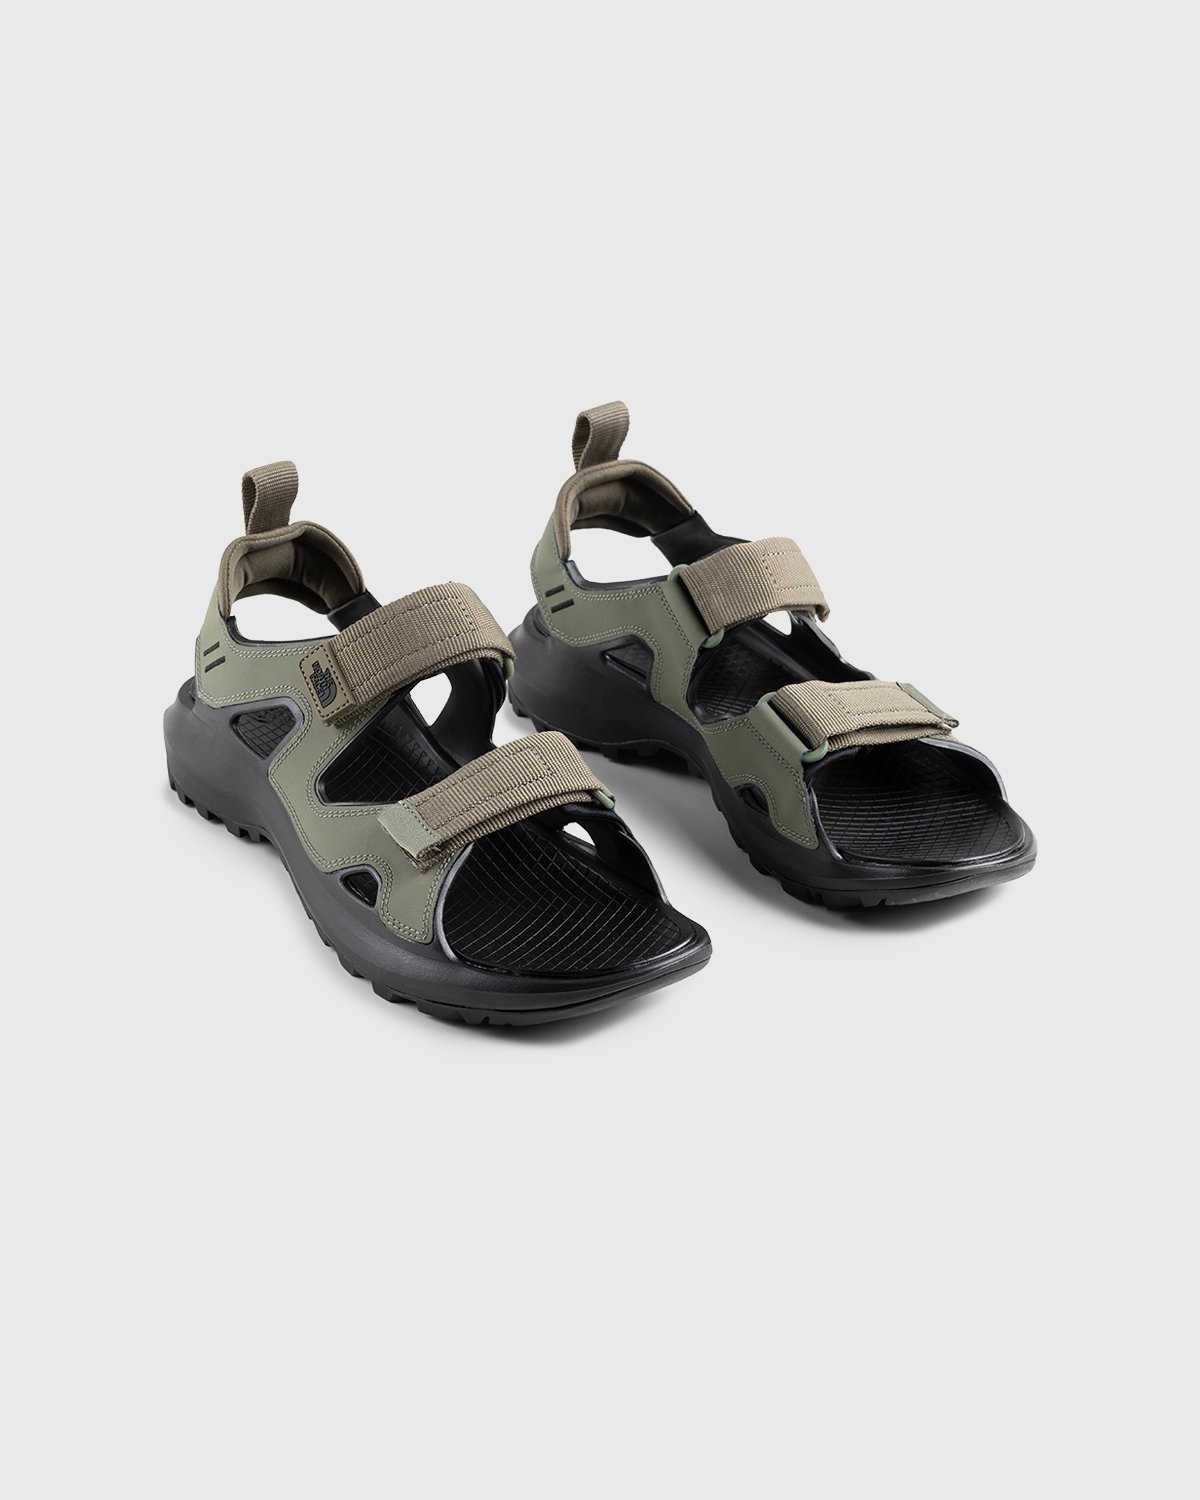 The North Face – Hedgehog Sandal III Burnt Olive Green/Black - Sandals & Slides - Green - Image 4